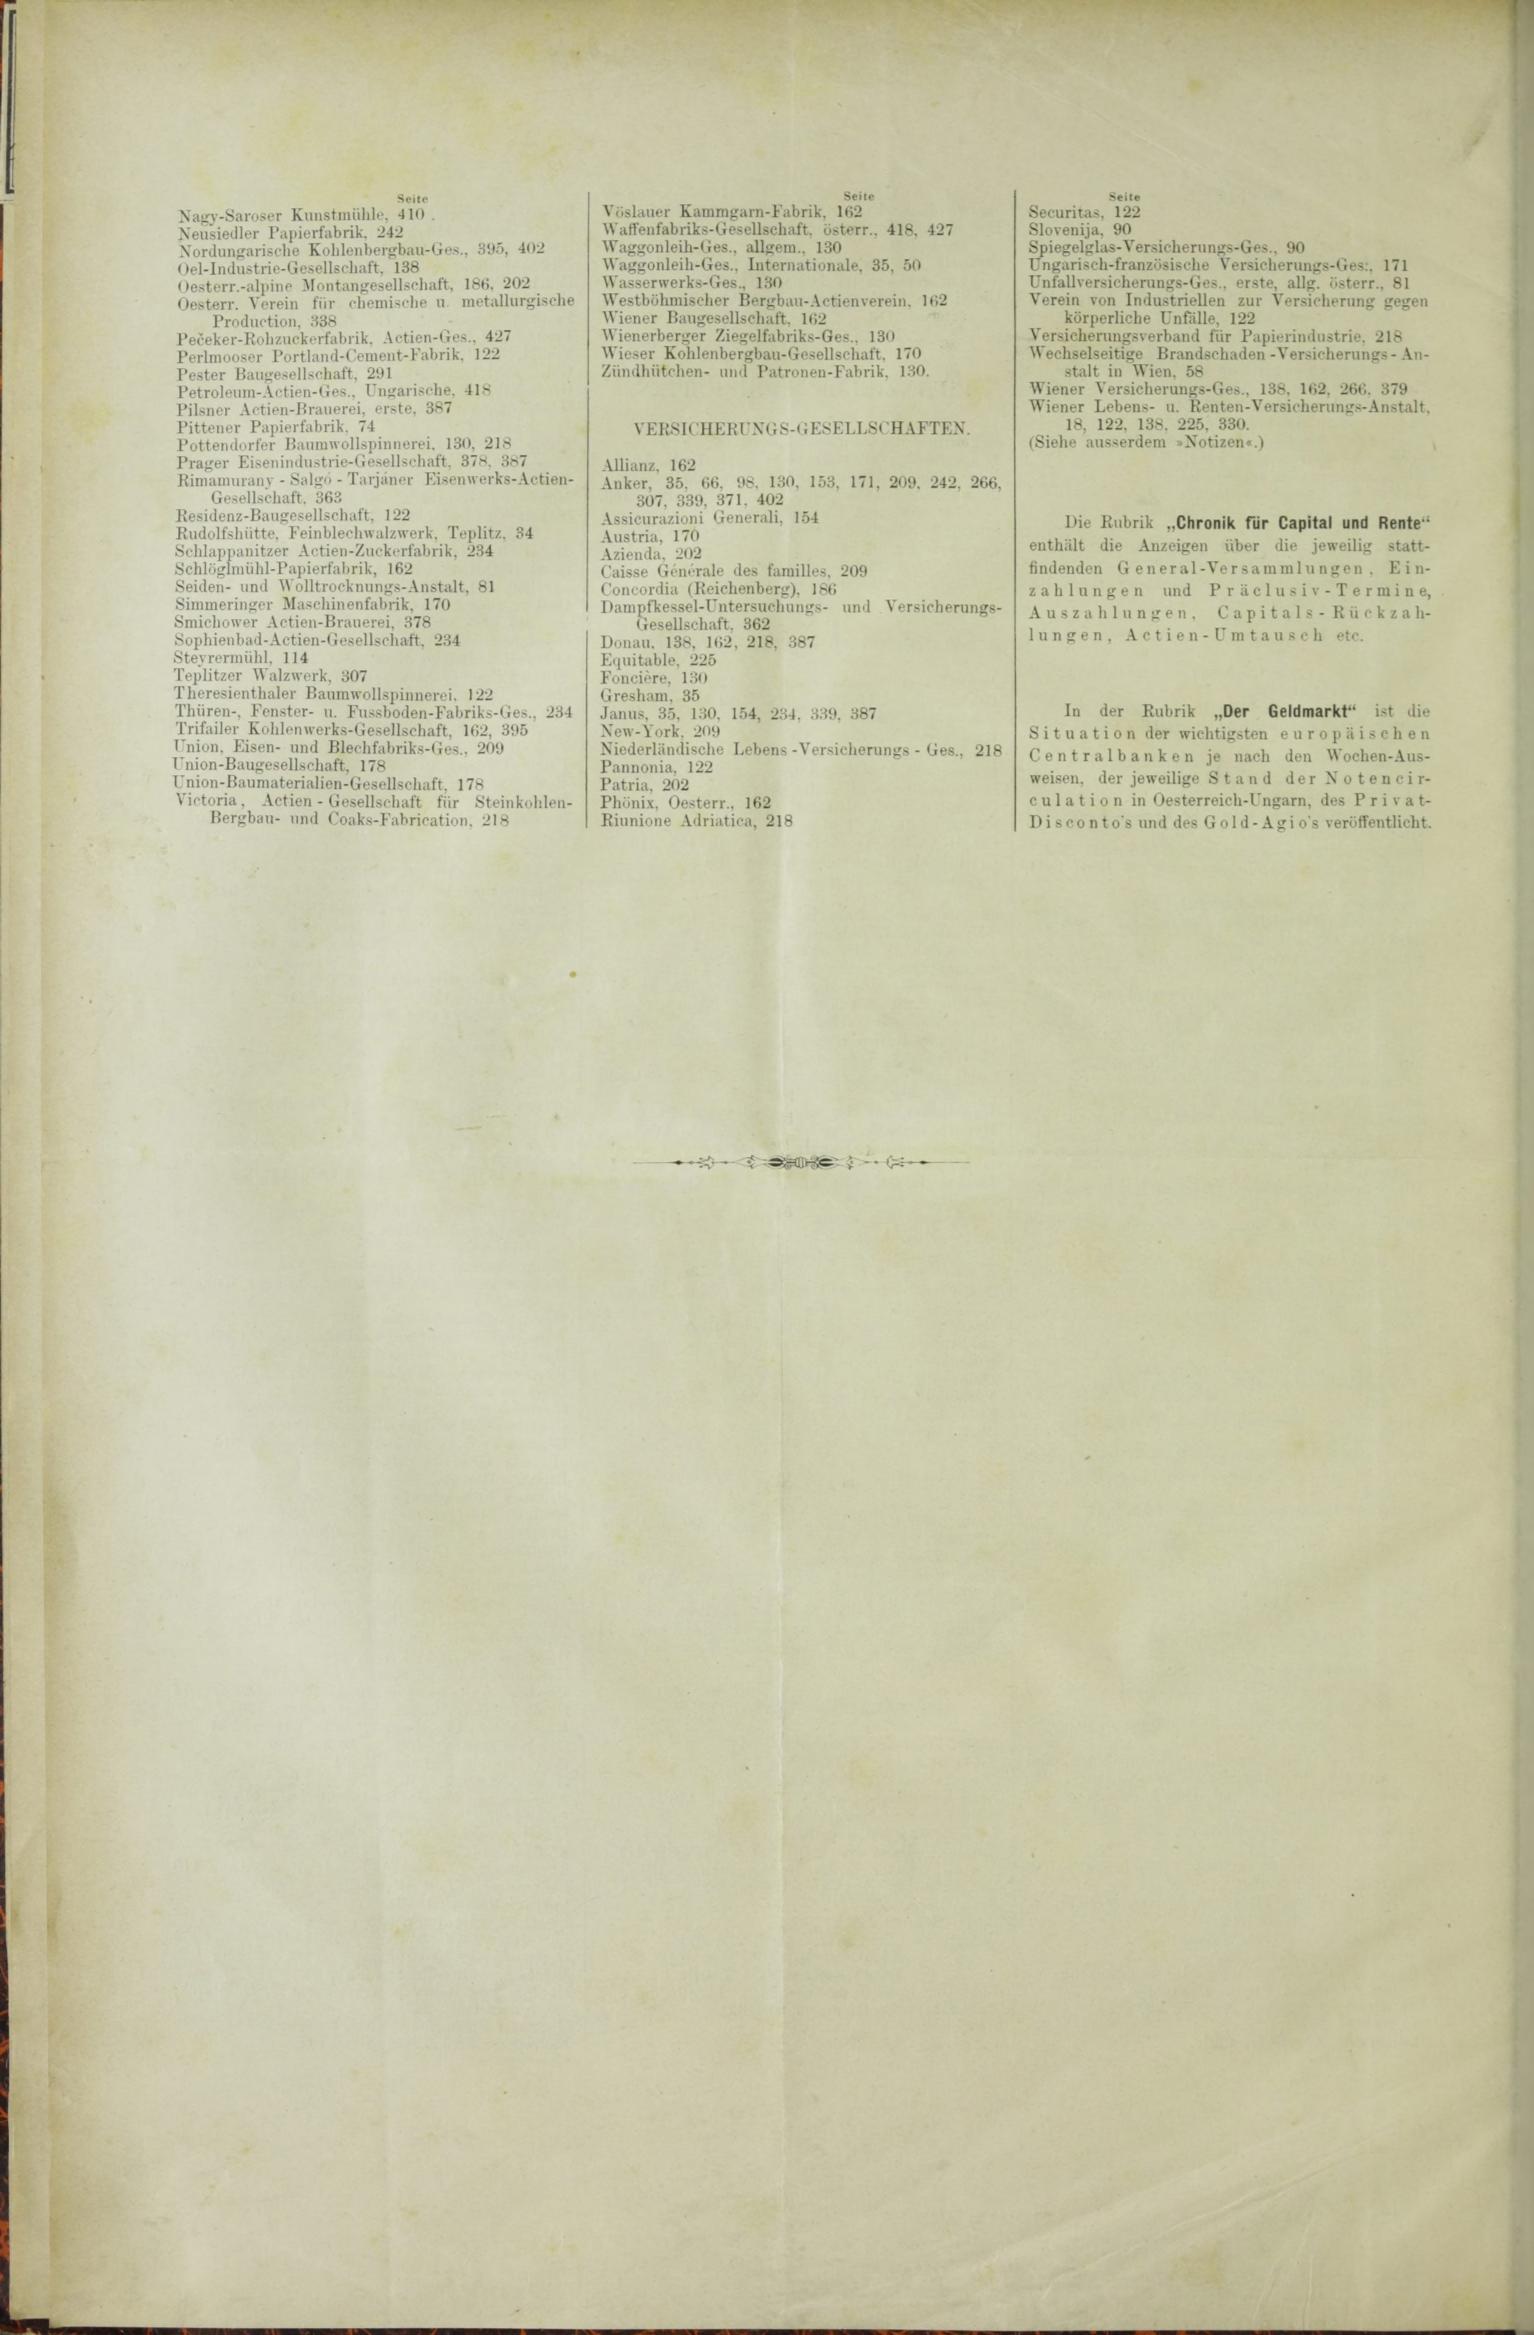 Der Tresor 03.09.1885 - Seite 12